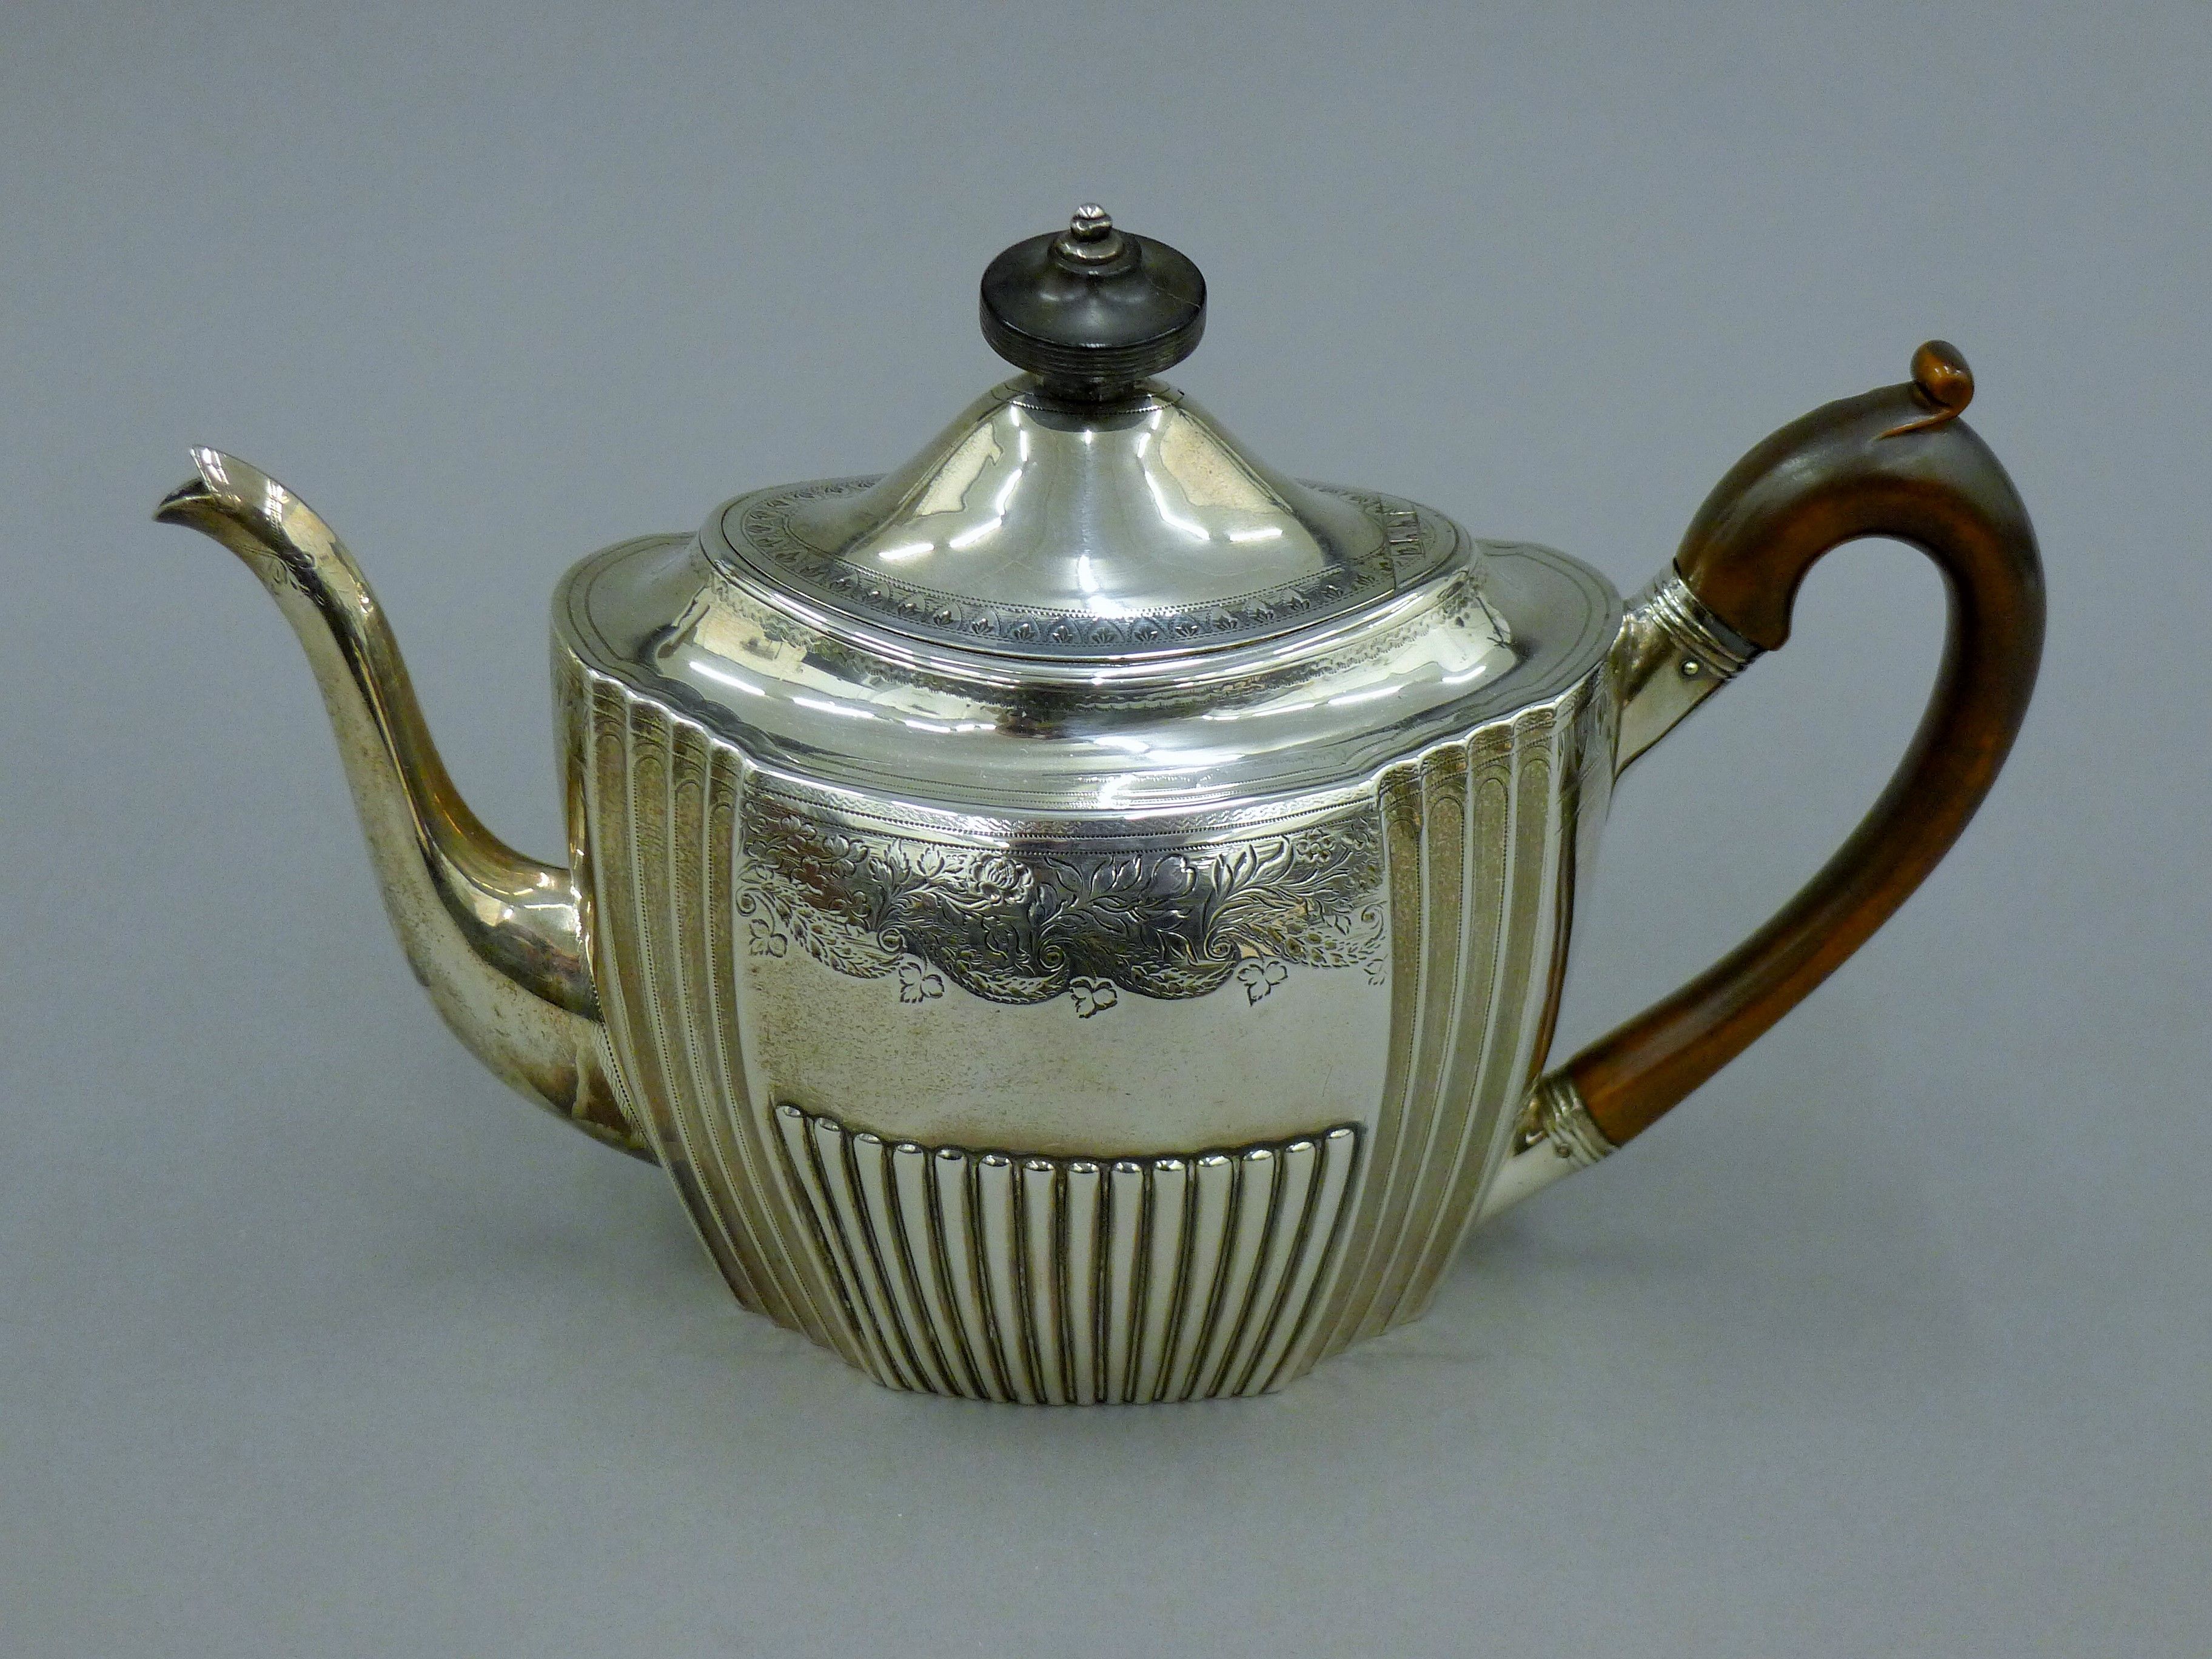 A Georgian silver teapot. 17 cm high. 471.4 grammes total weight.